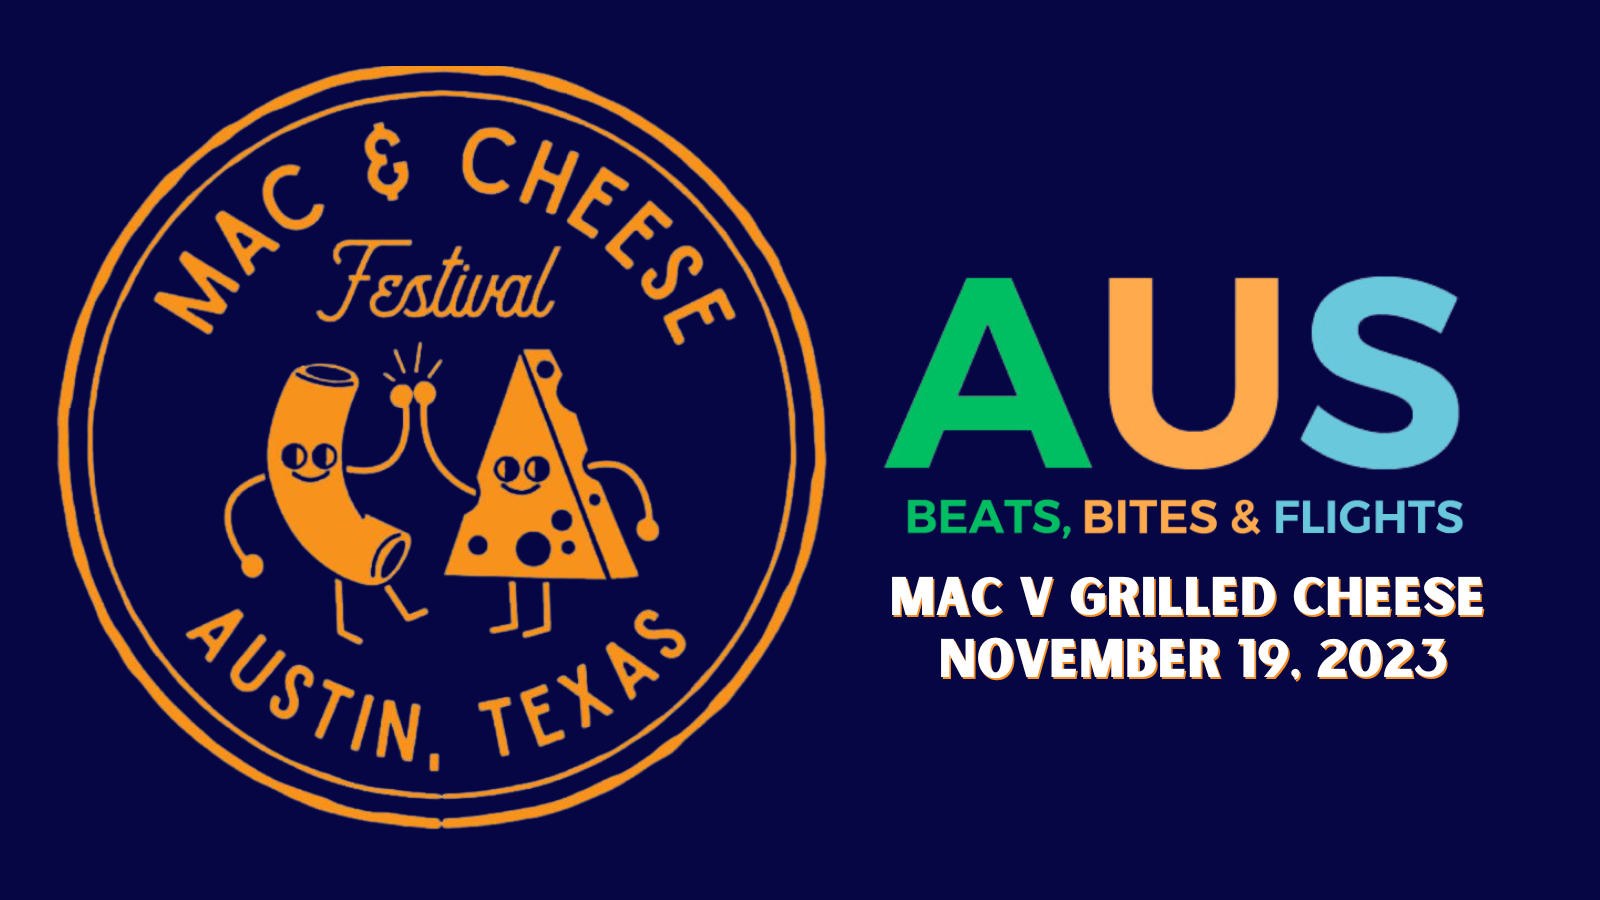 AUS logo + Mac n Cheese Fest logo